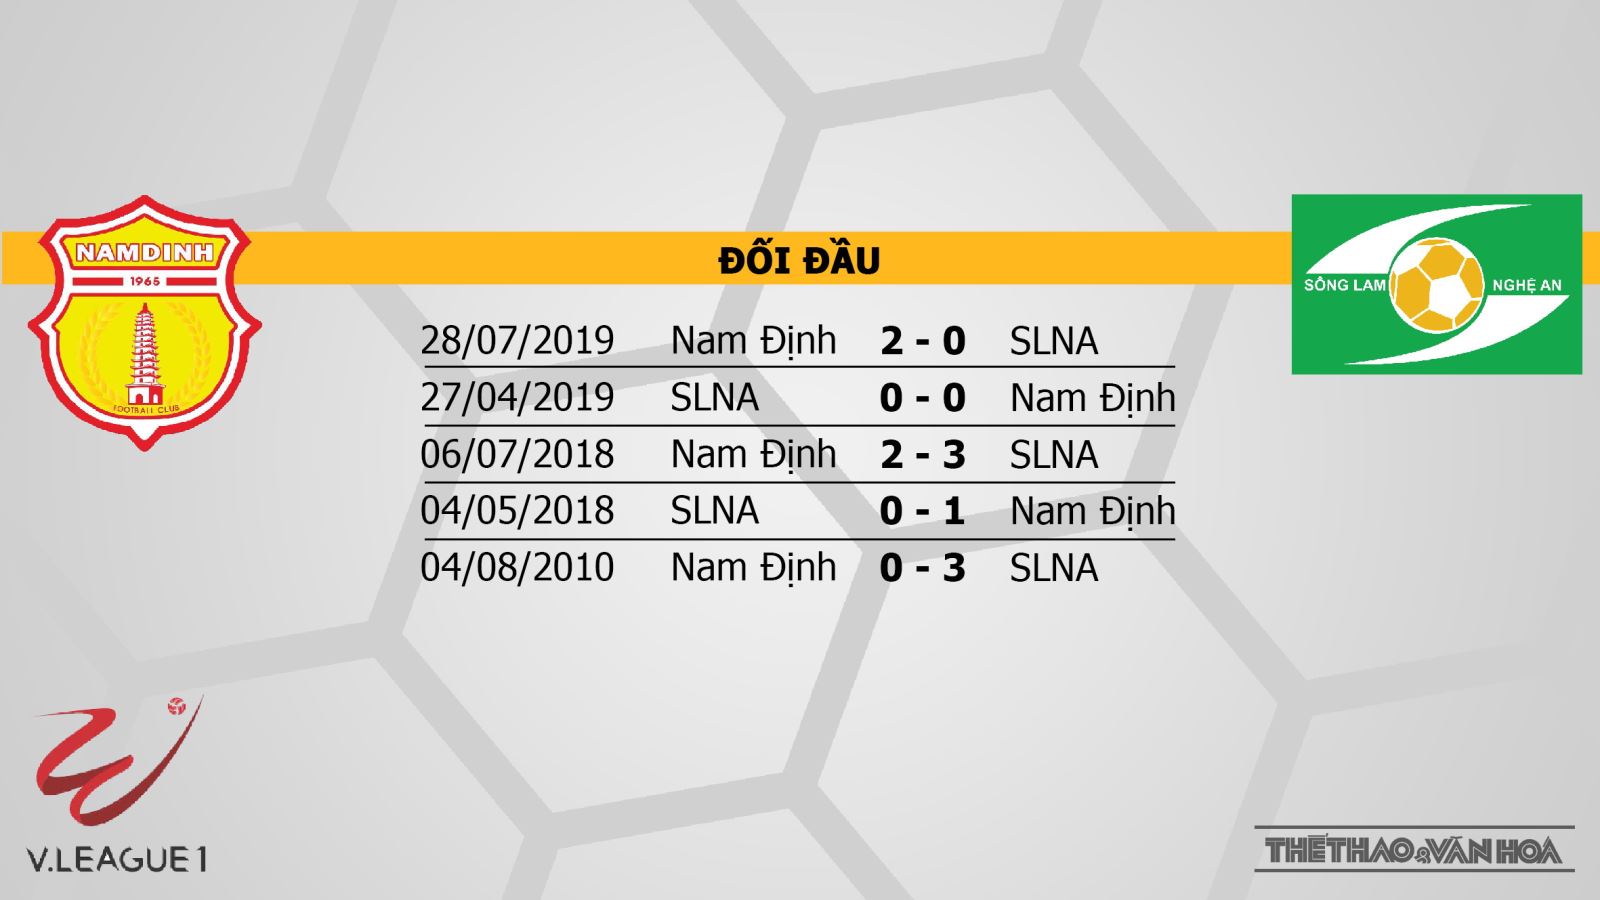 Nam Định vs SLNA, SLNA, Nam Định, trực tiếp bóng đá, bóng đá hôm nay, trực tiếp Nam Định vs SLNA, V-League, nhận định bóng đá, kèo bóng đá